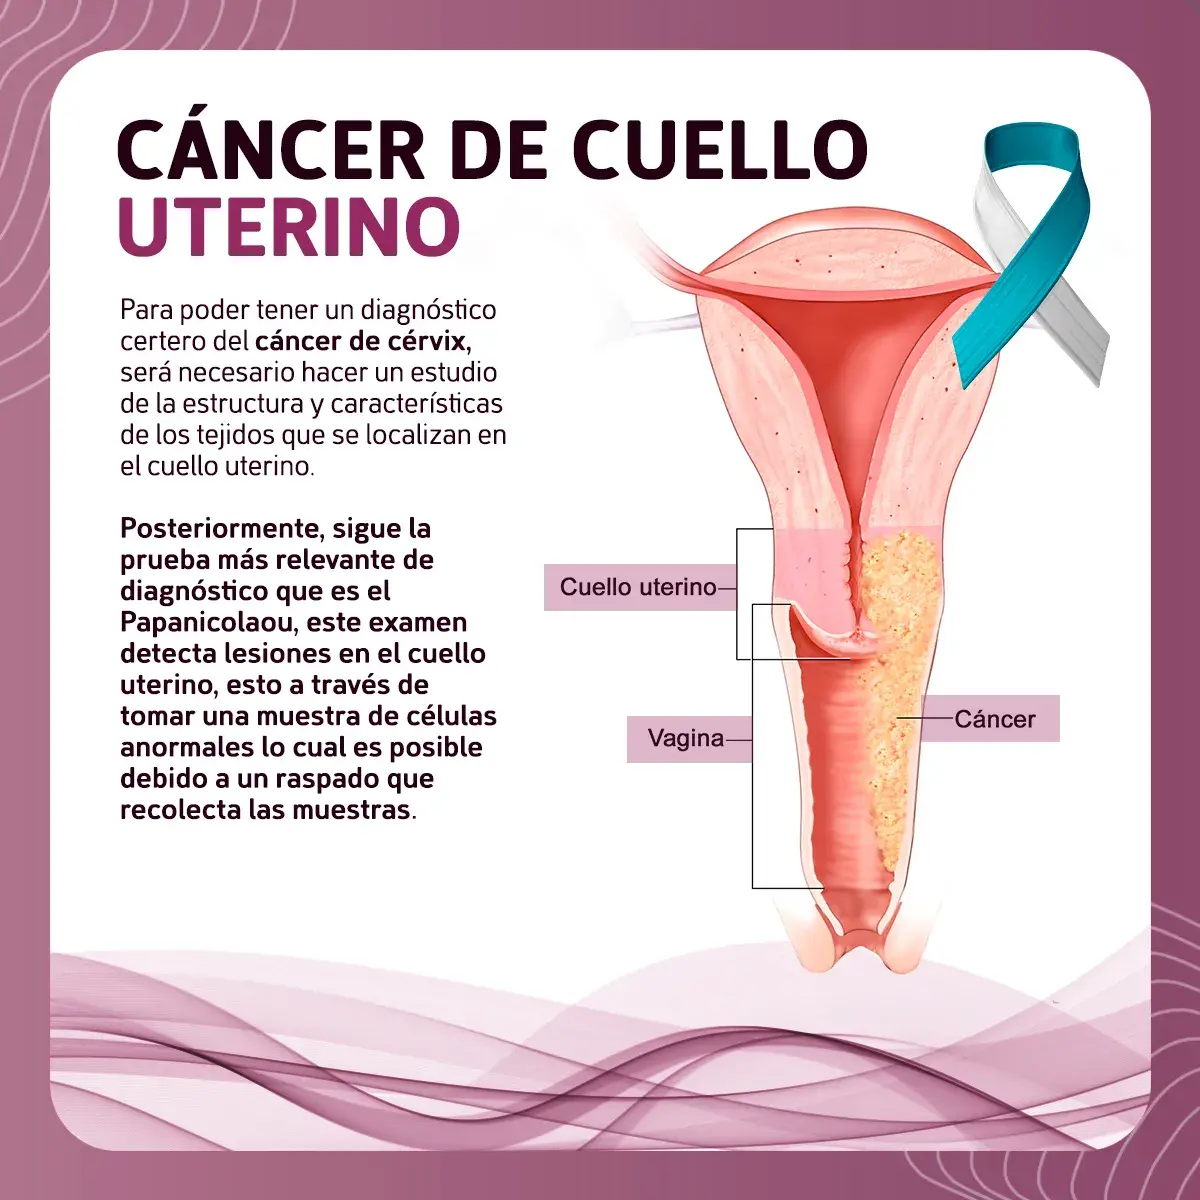 La detección del cáncer de cérvix se hace mediante la toma de muestra de células